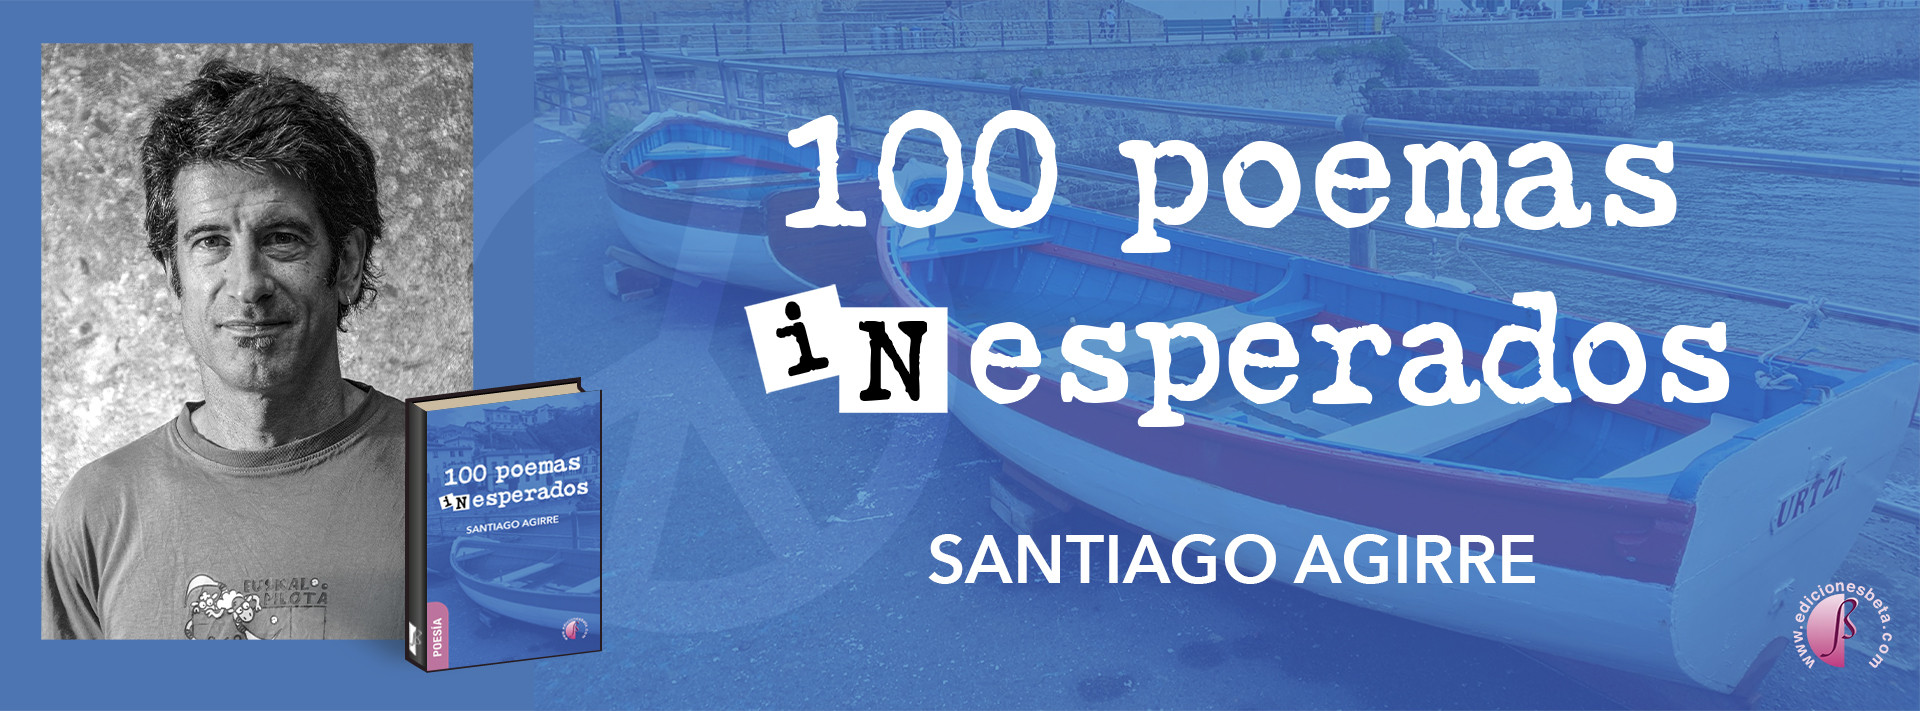 100 Poemas inesperados, de Santi Agirre